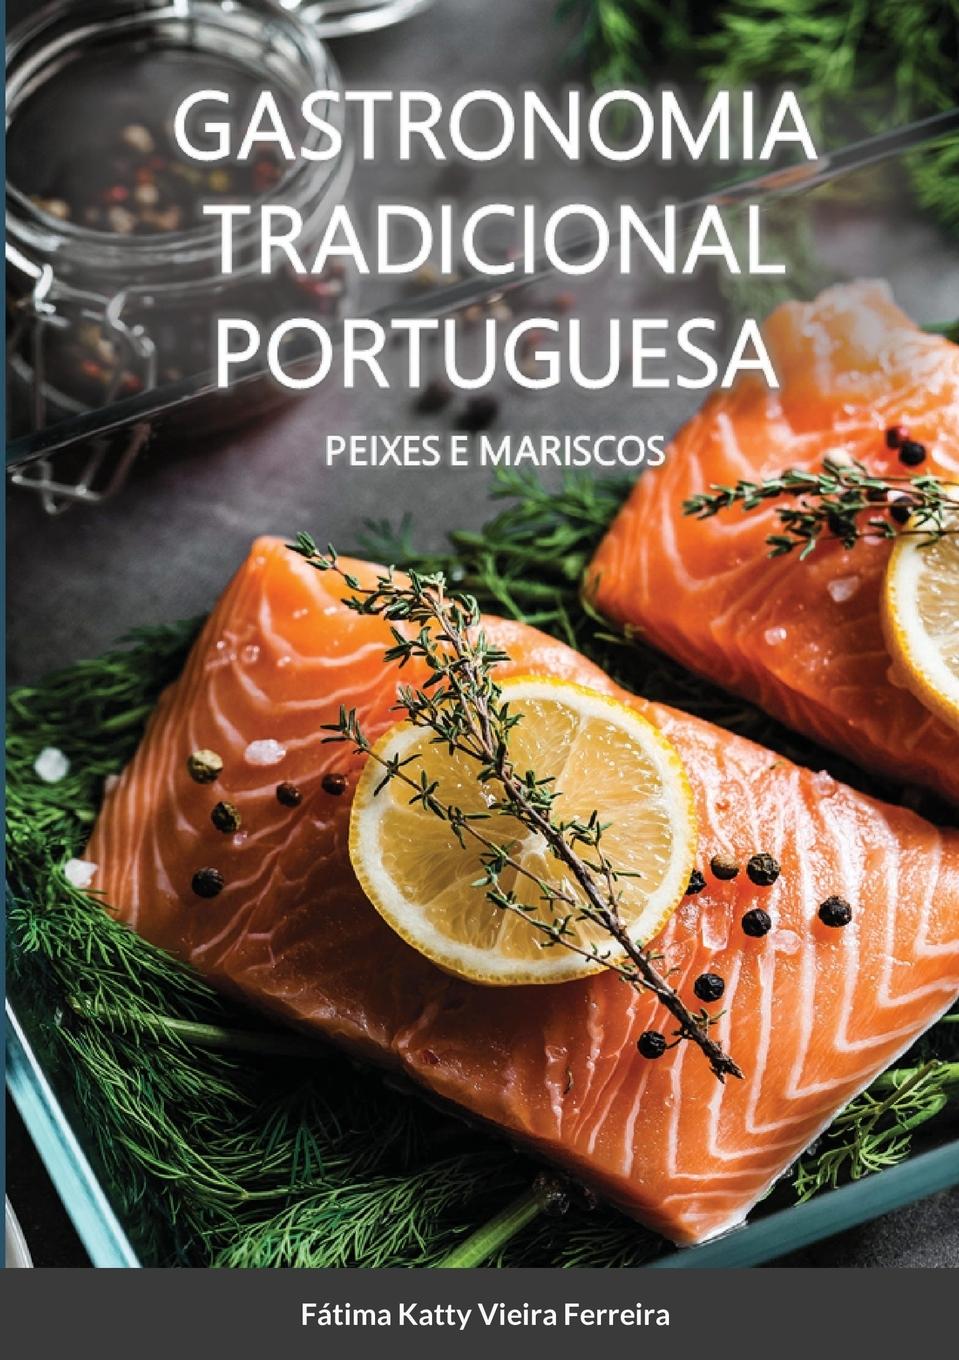 Carte Gastronomia Tradicional Portuguesa - Peixes e Mariscos 